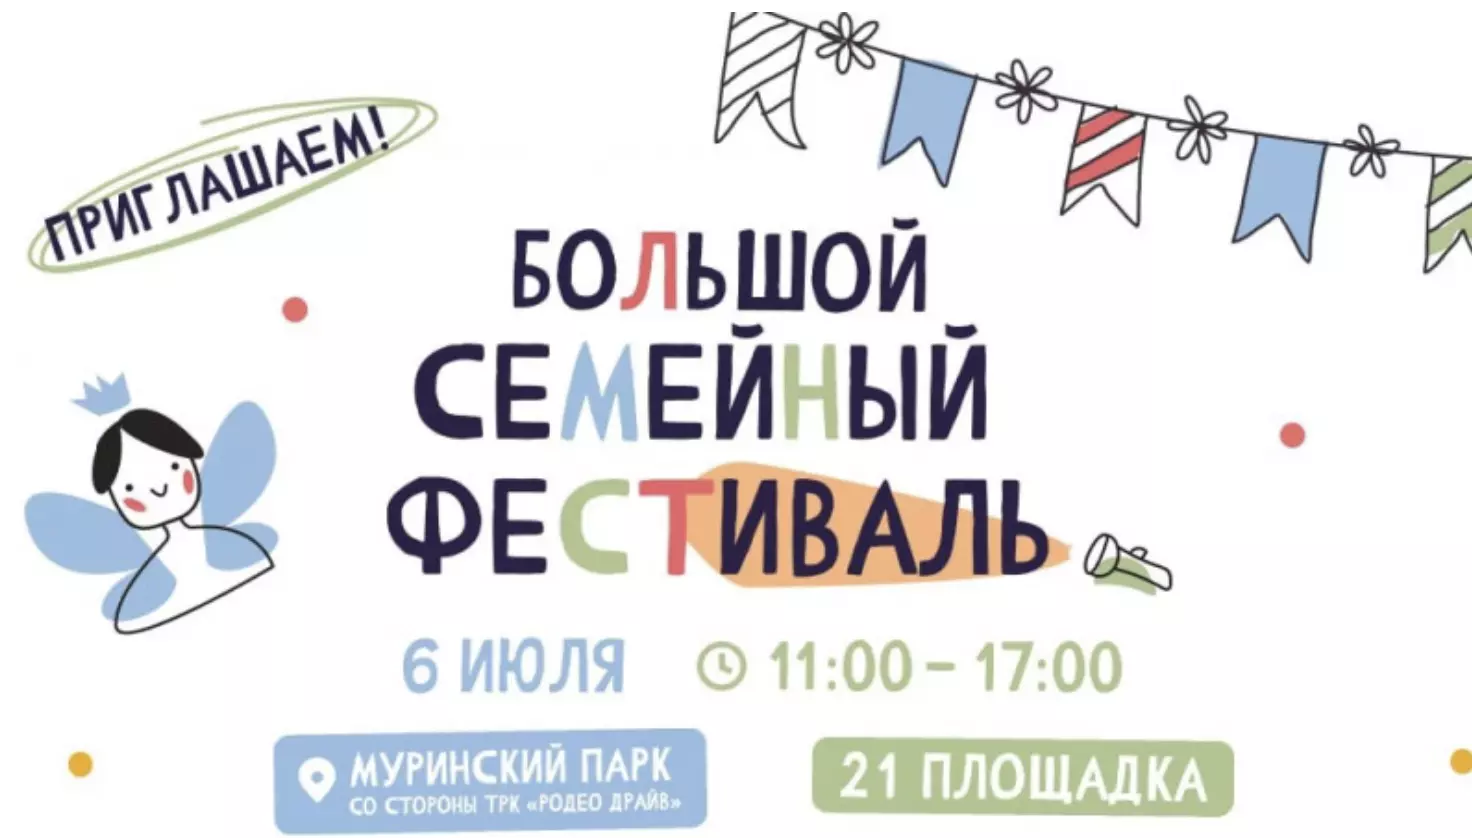 6 июля пройдет семейный фестиваль посвященный 88-летию Калининского района